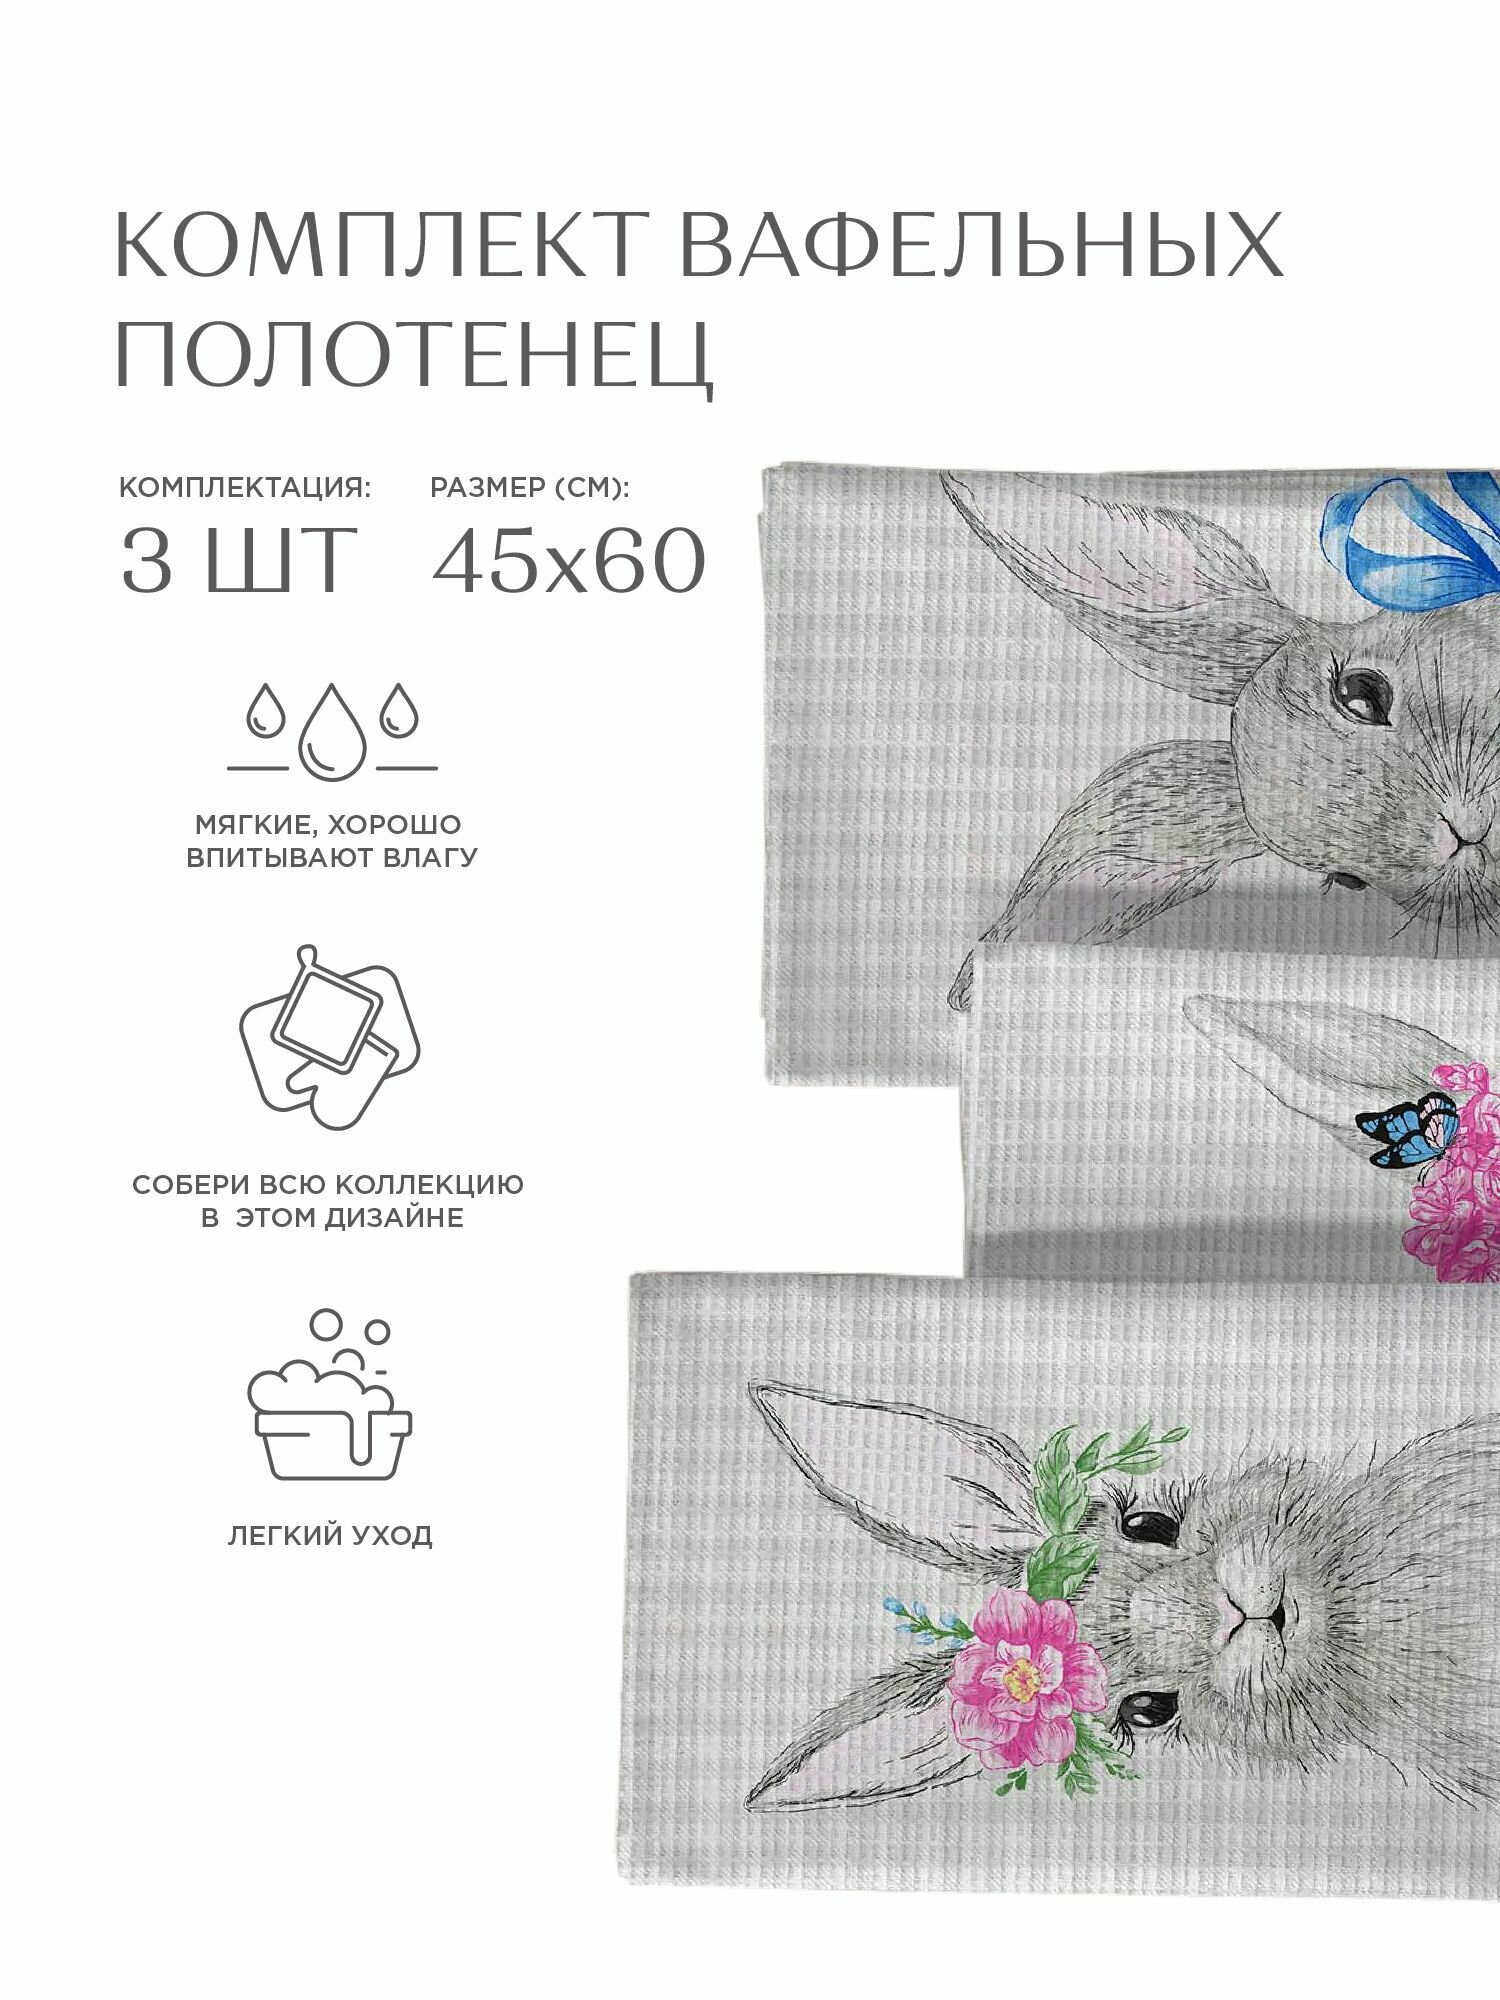 Комплект вафельных полотенец 45х60 (3 шт.) "Унисон" рис 33083-1 Rabbit - фотография № 6